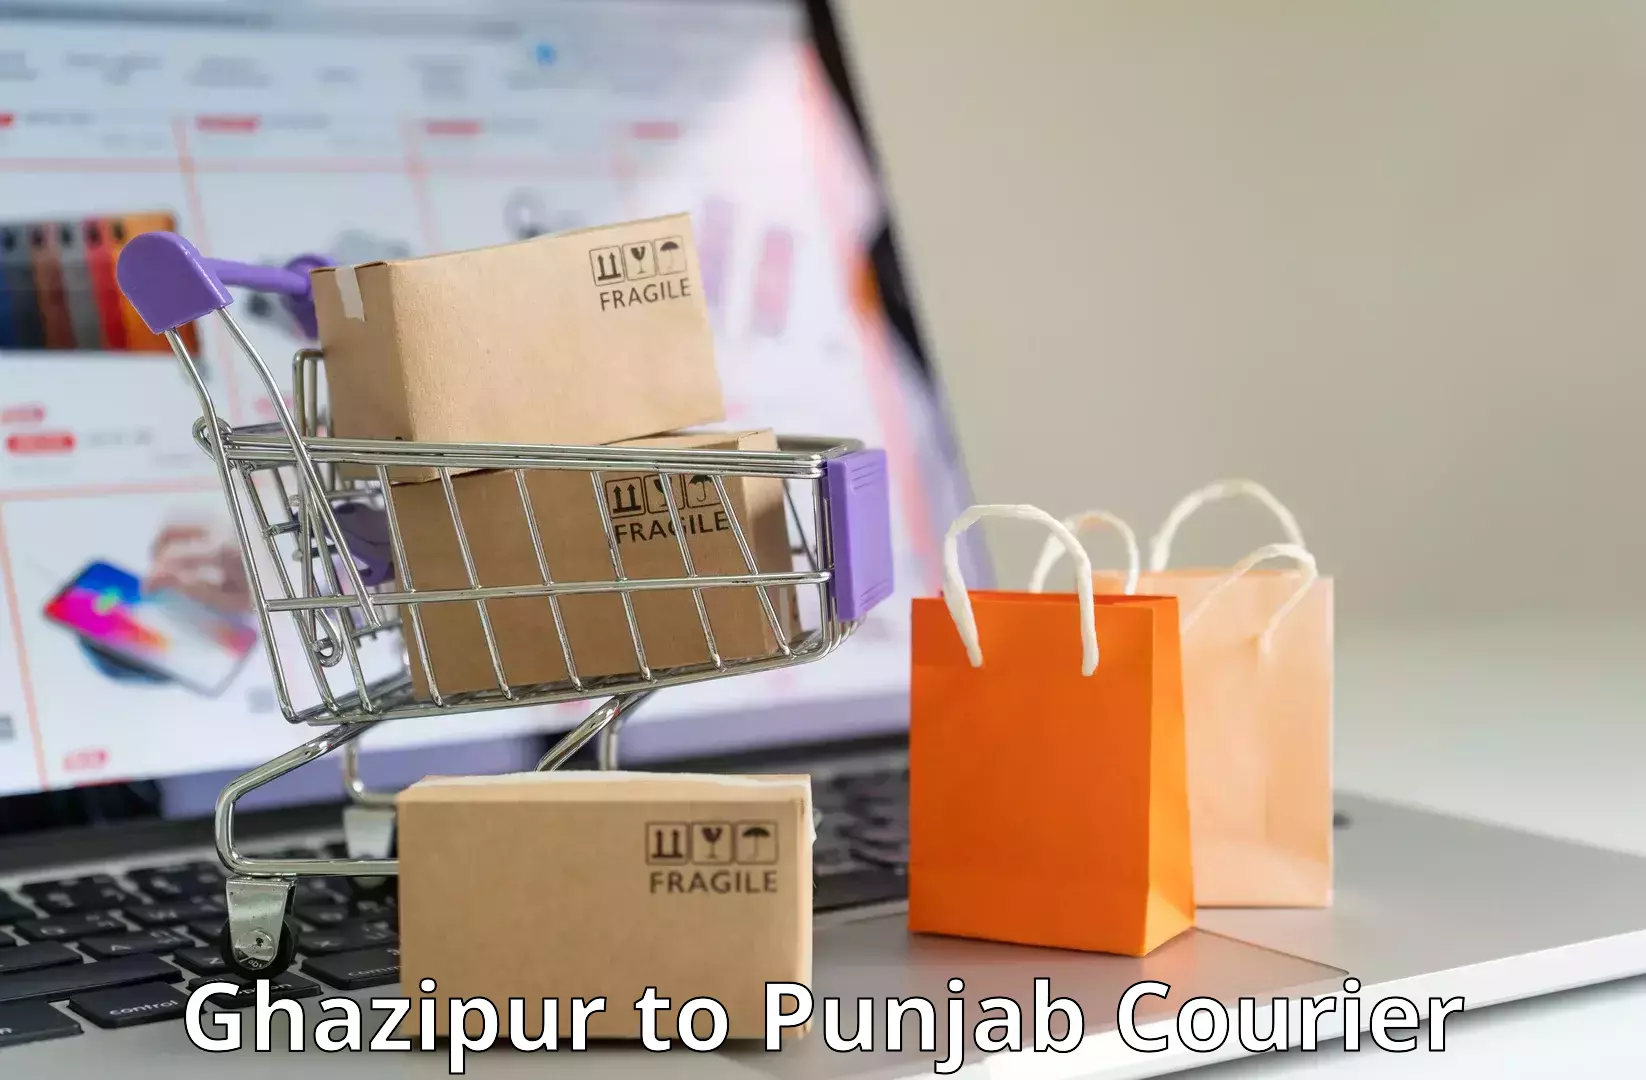 Punctual parcel services Ghazipur to Punjab